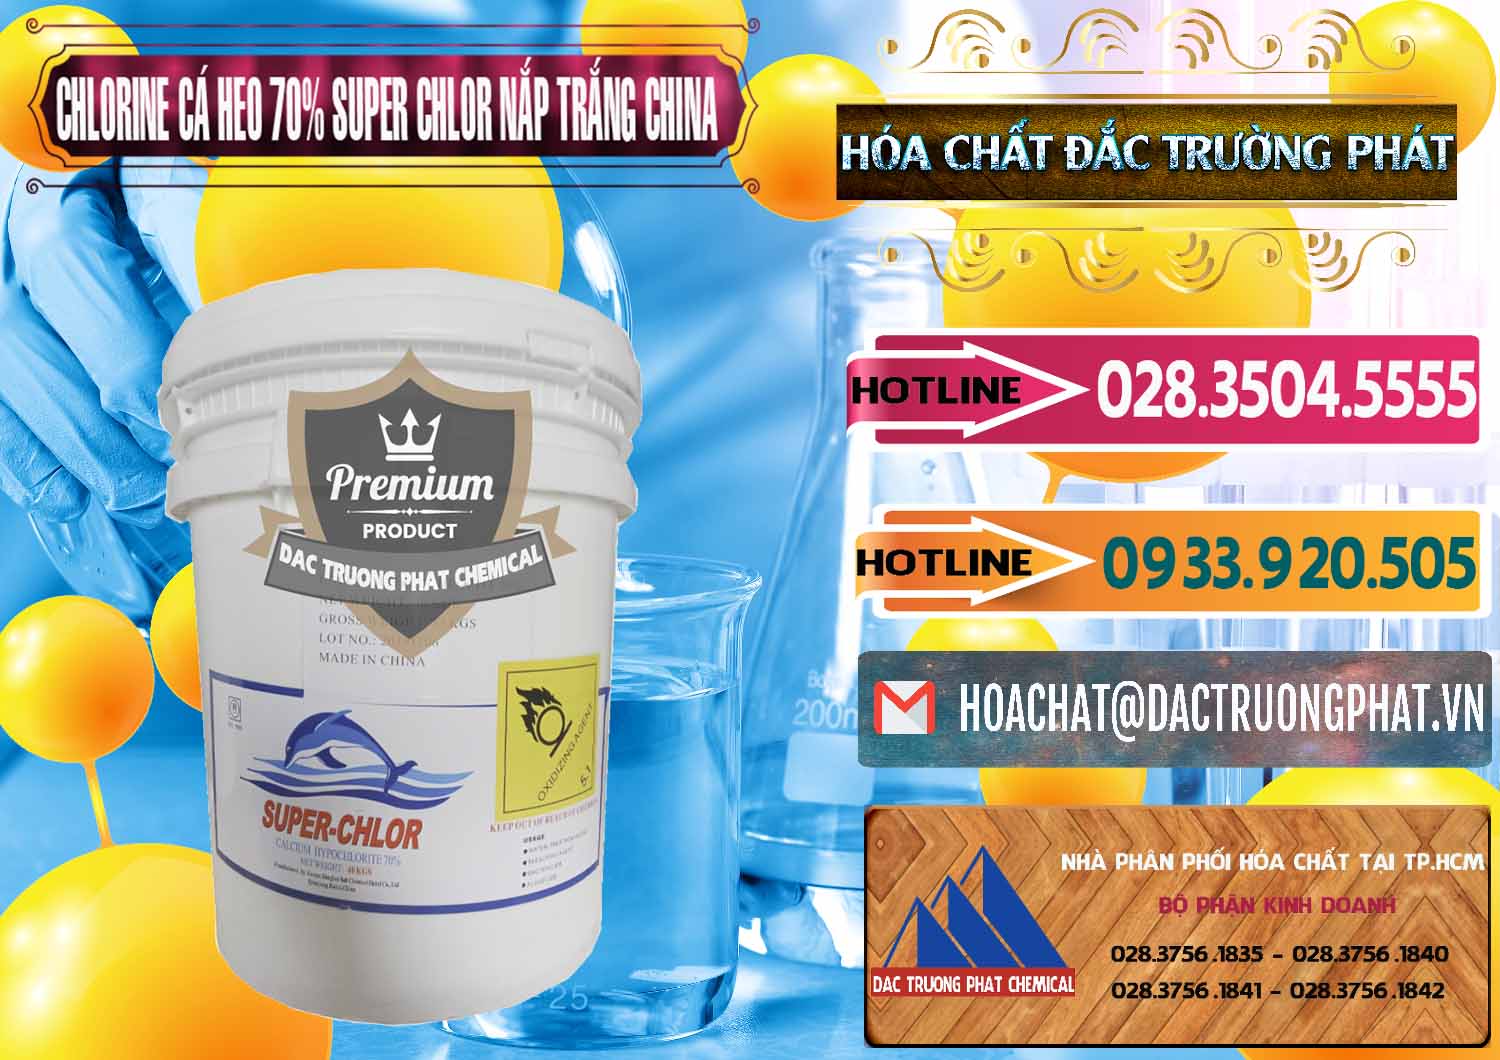 Chuyên kinh doanh _ bán Clorin - Chlorine Cá Heo 70% Super Chlor Nắp Trắng Trung Quốc China - 0240 - Đơn vị phân phối - bán hóa chất tại TP.HCM - dactruongphat.vn